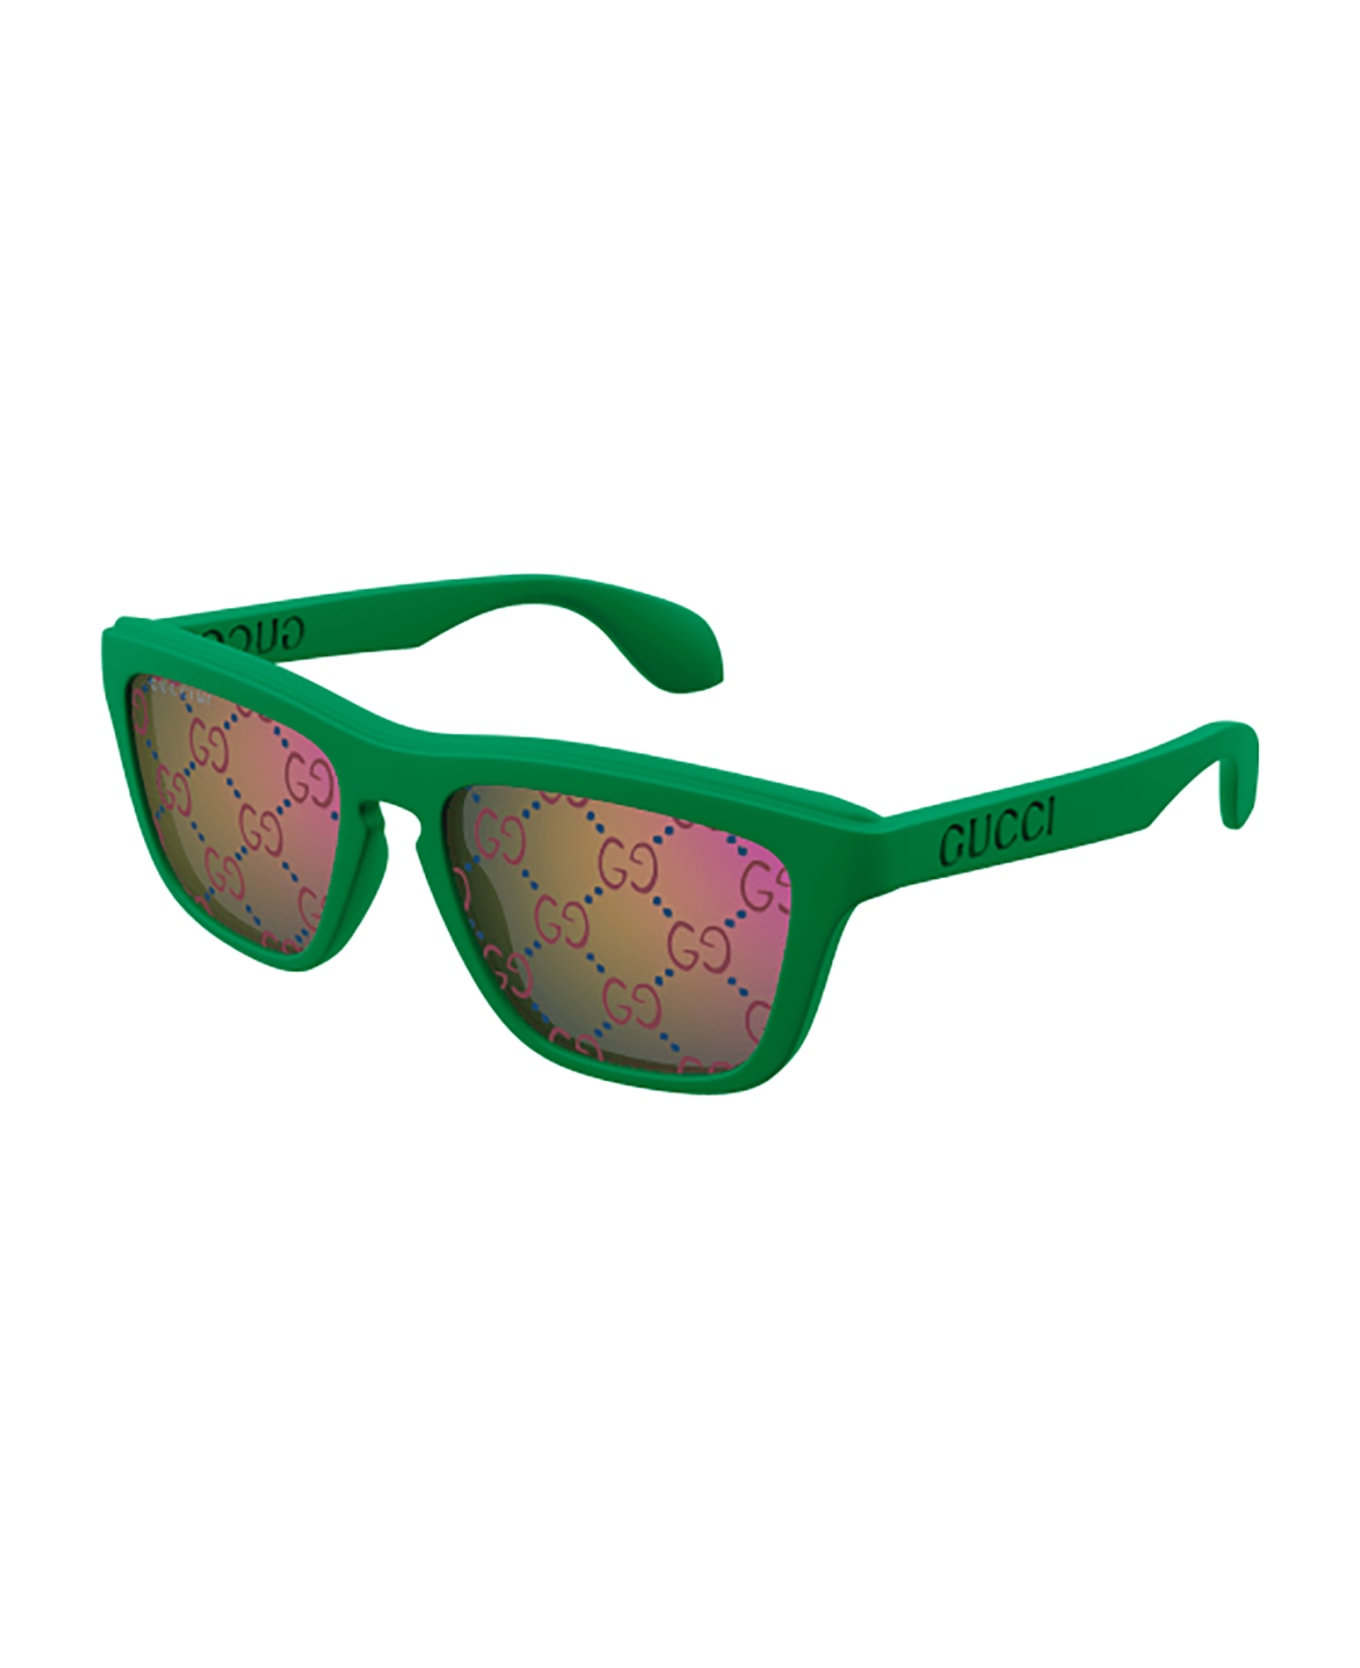 Gucci Eyewear GG1571S bellux Sunglasses - Green Green Blue